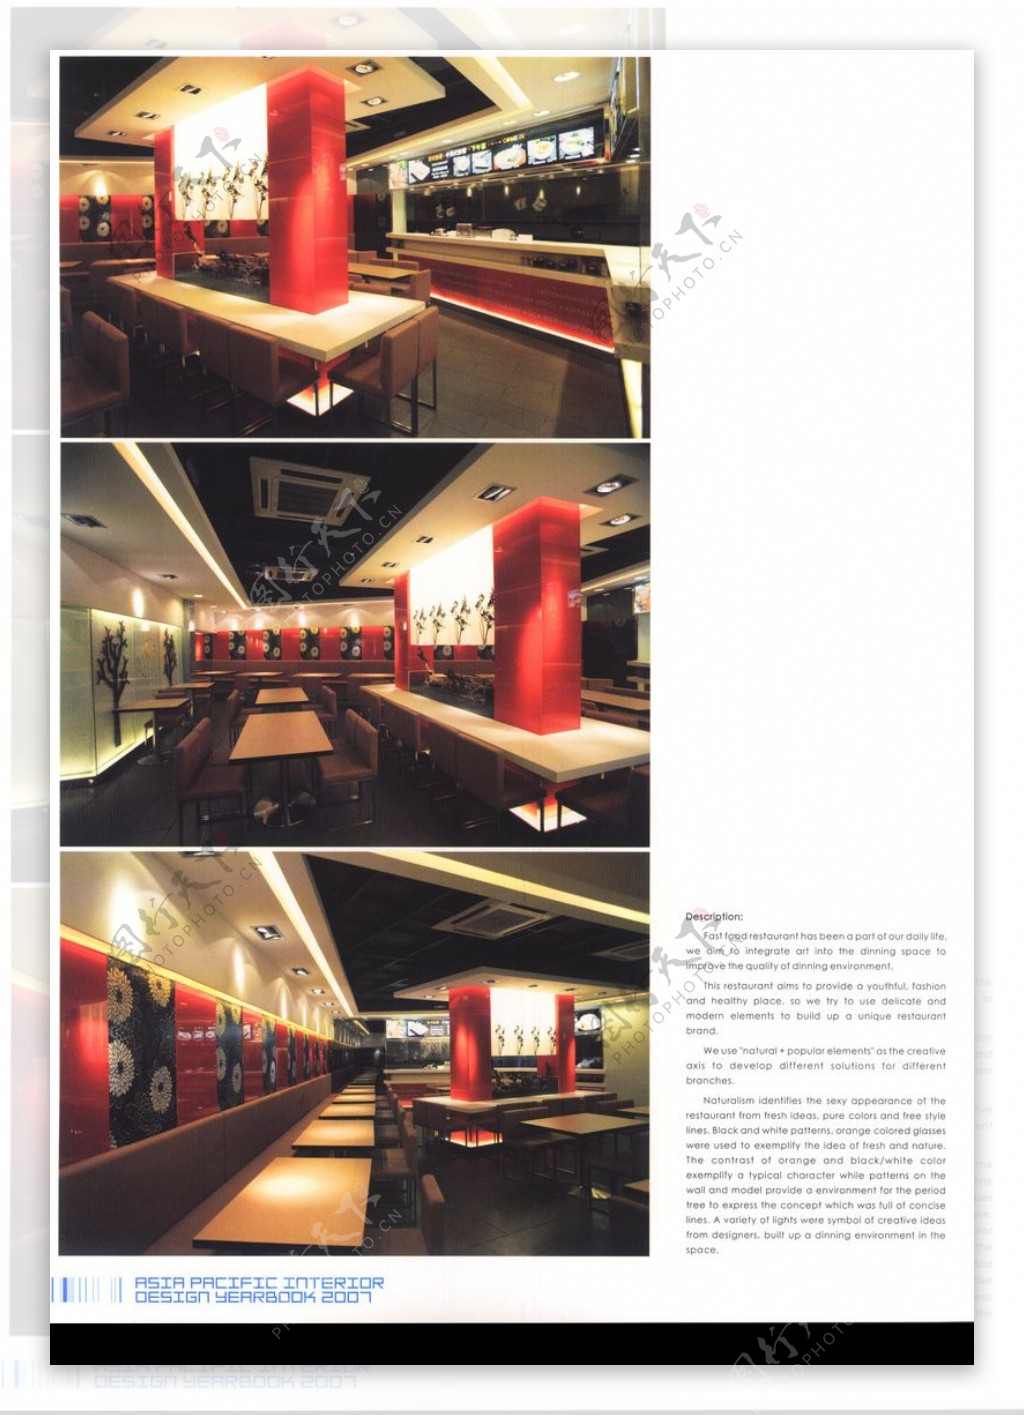 亚太室内设计年鉴2007餐馆酒吧0294